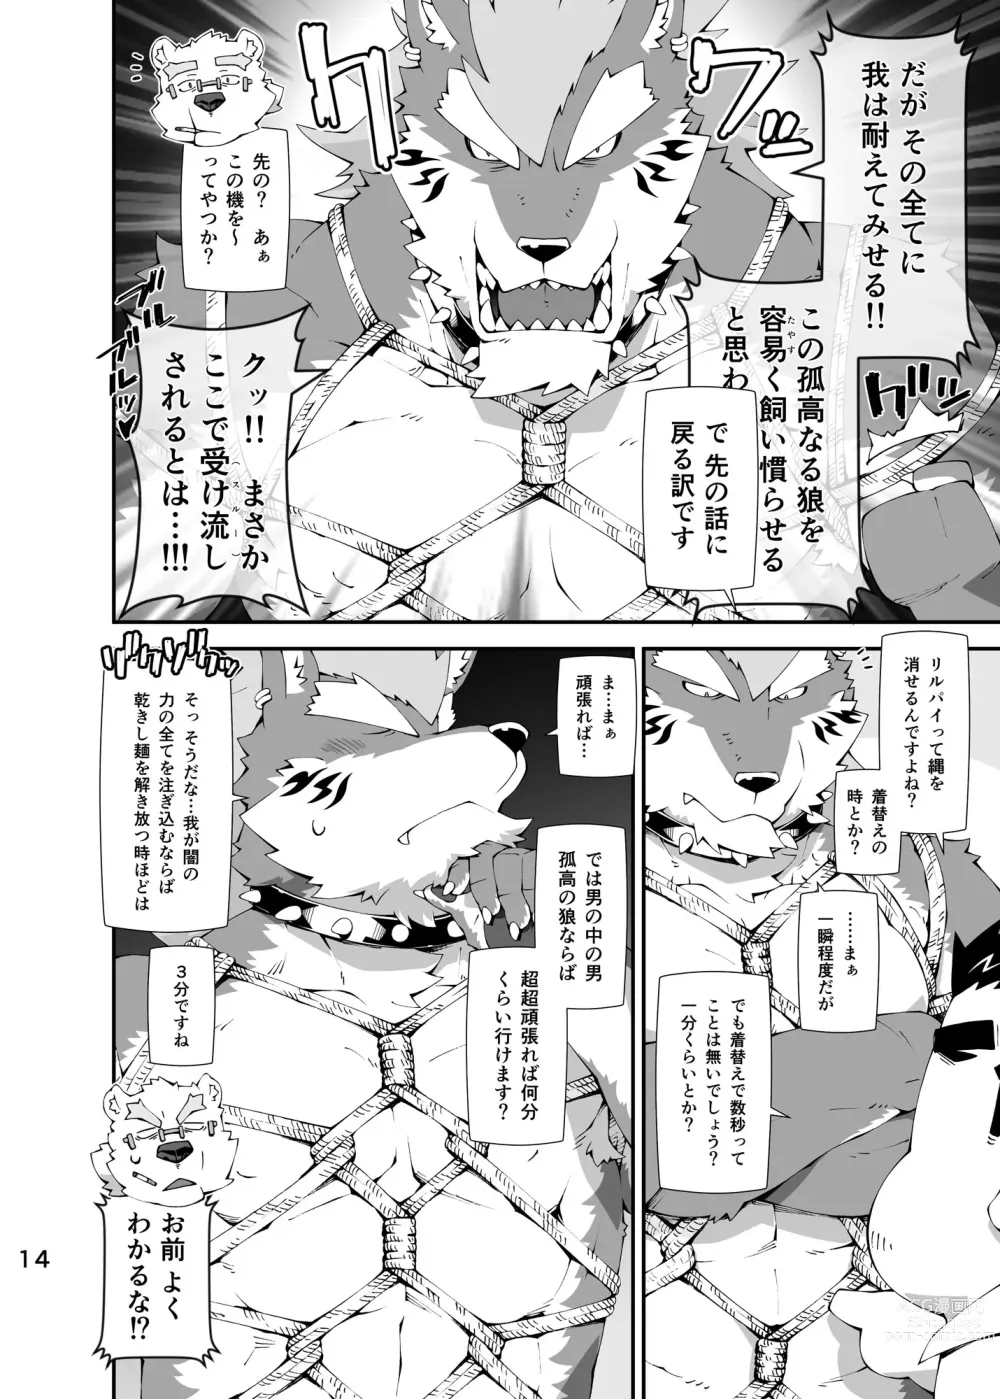 Page 13 of doujinshi Shirokuma to Fe